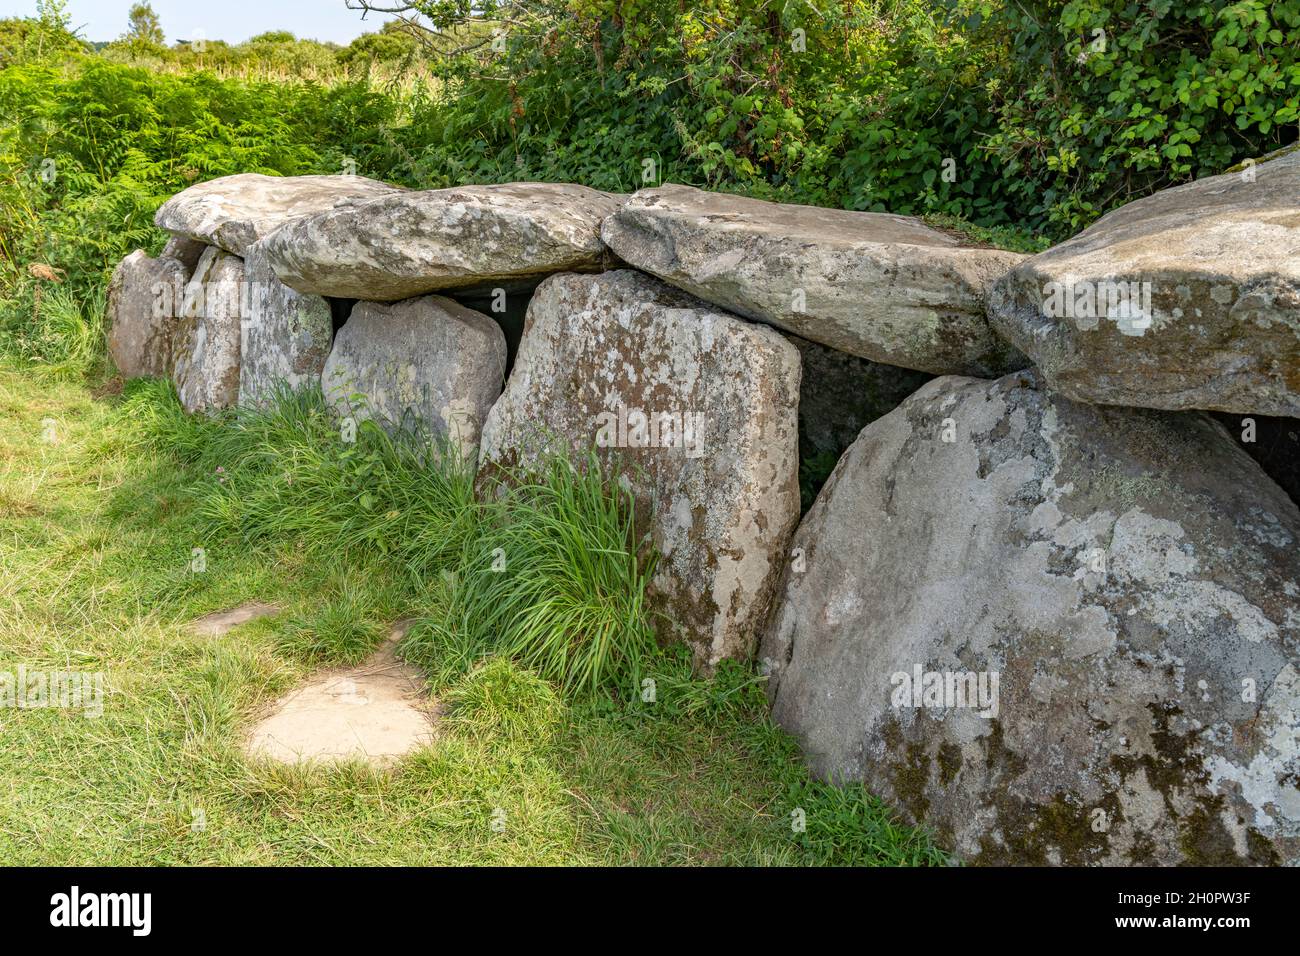 Dolmen von Kerguntuil bei Tregastel, Bretagne, Frankreich | Kerguntuil Allée couverte - Galería tumba cerca de Tregastel, Bretaña, Francia Foto de stock